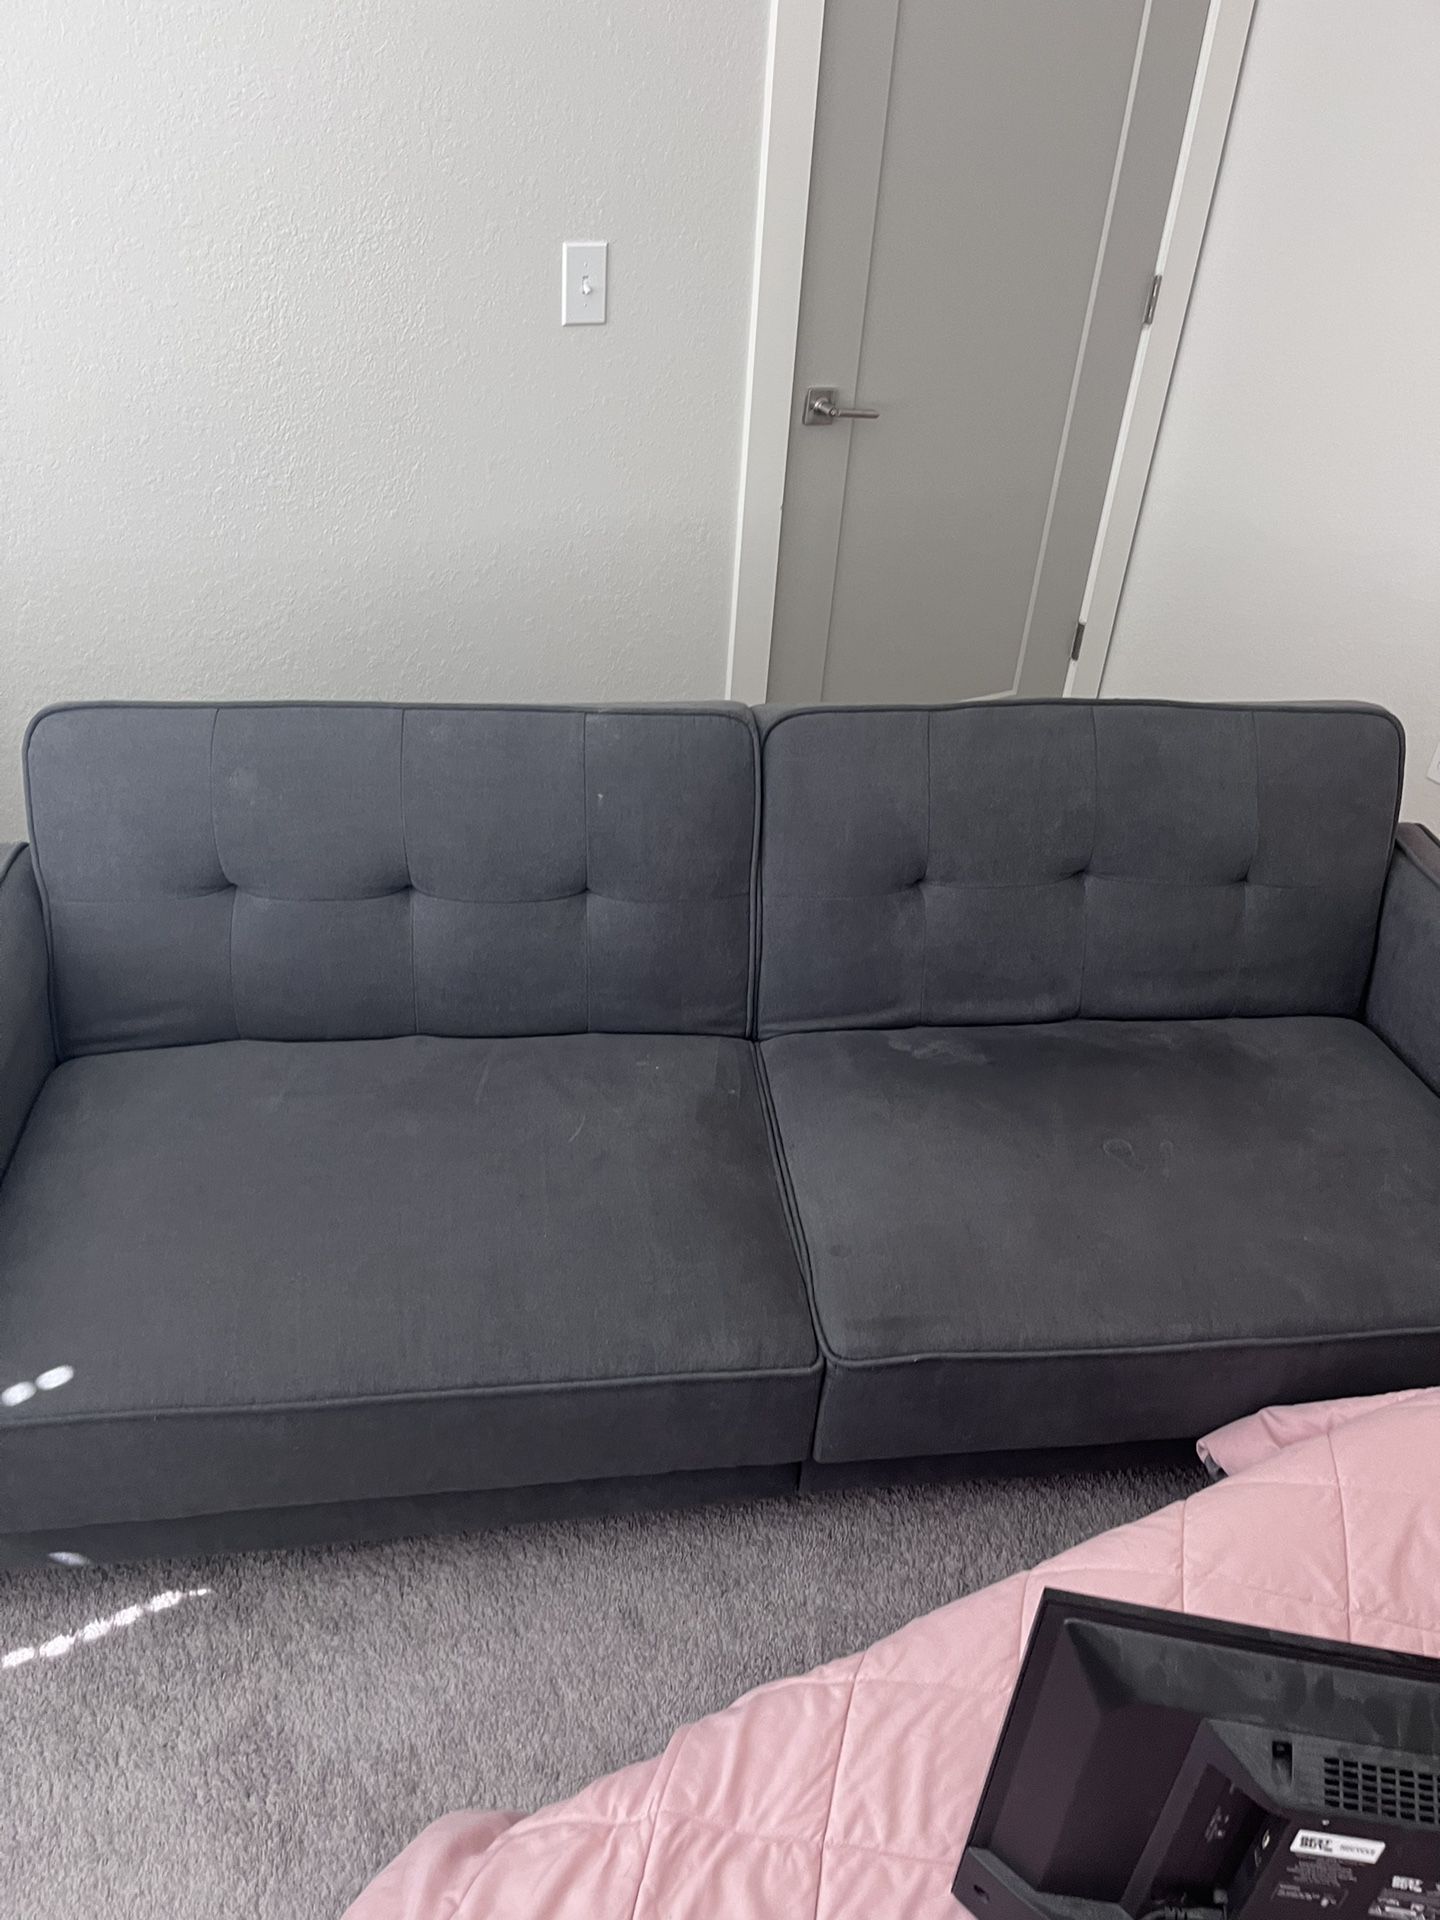 Sofa Bed Futon